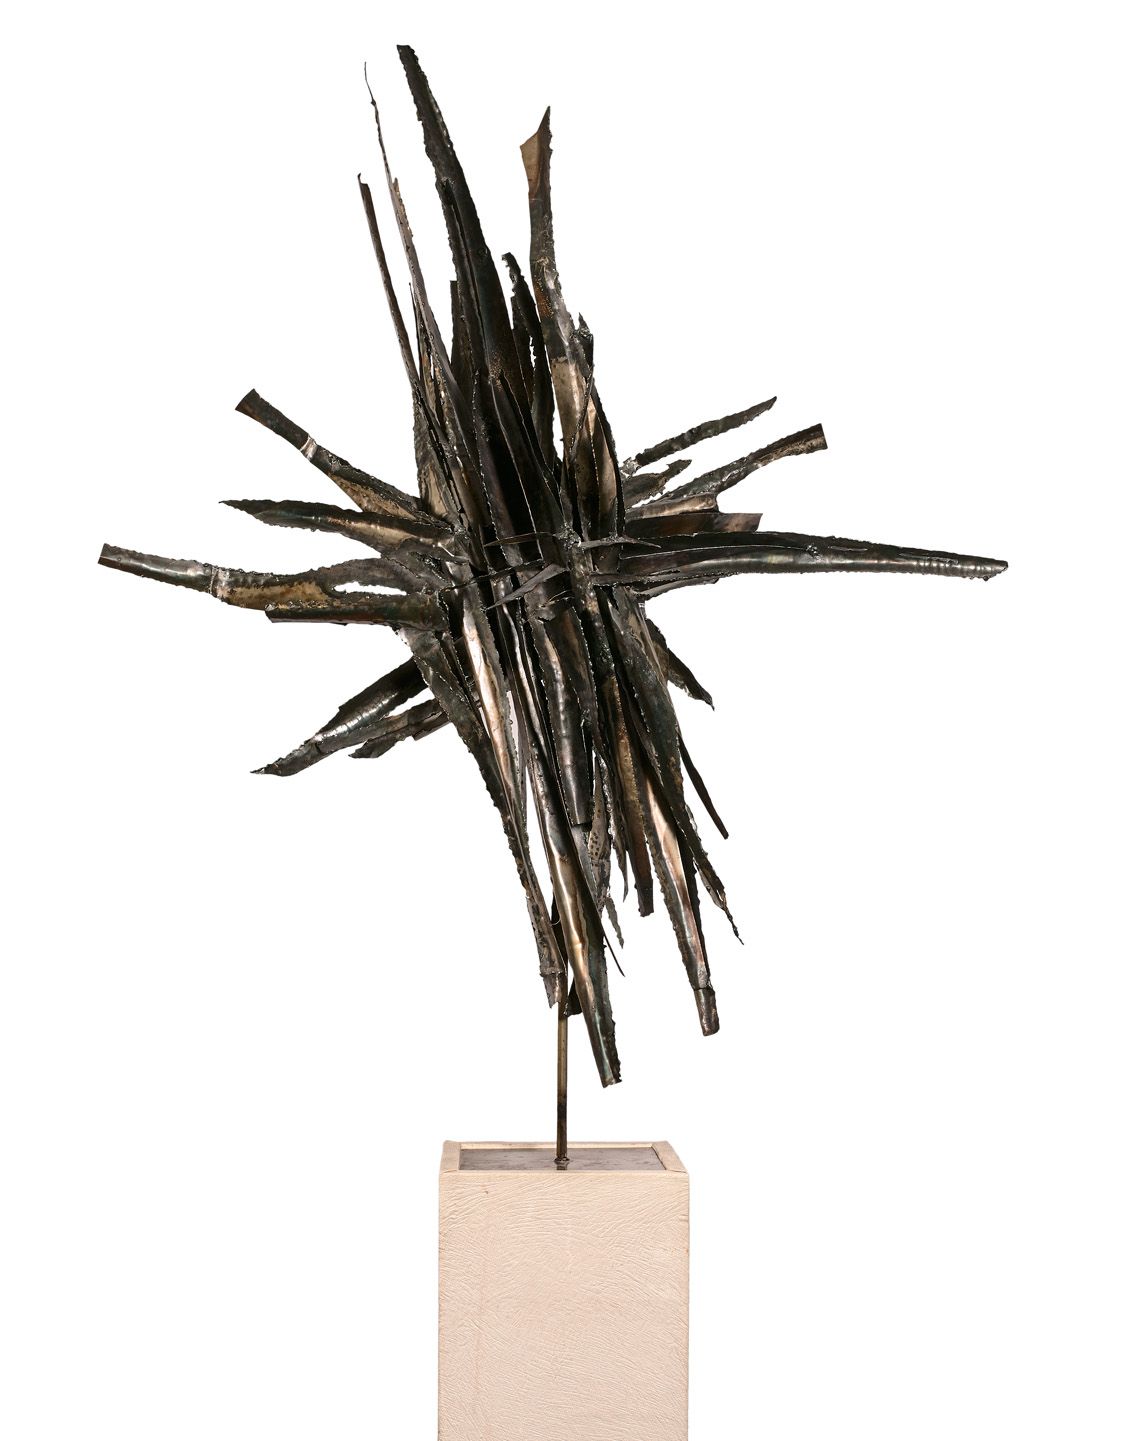 LEE Caroline LEE (1932-2014)

Composition abstraite

Sculpture en métal soudé, s&hellip;